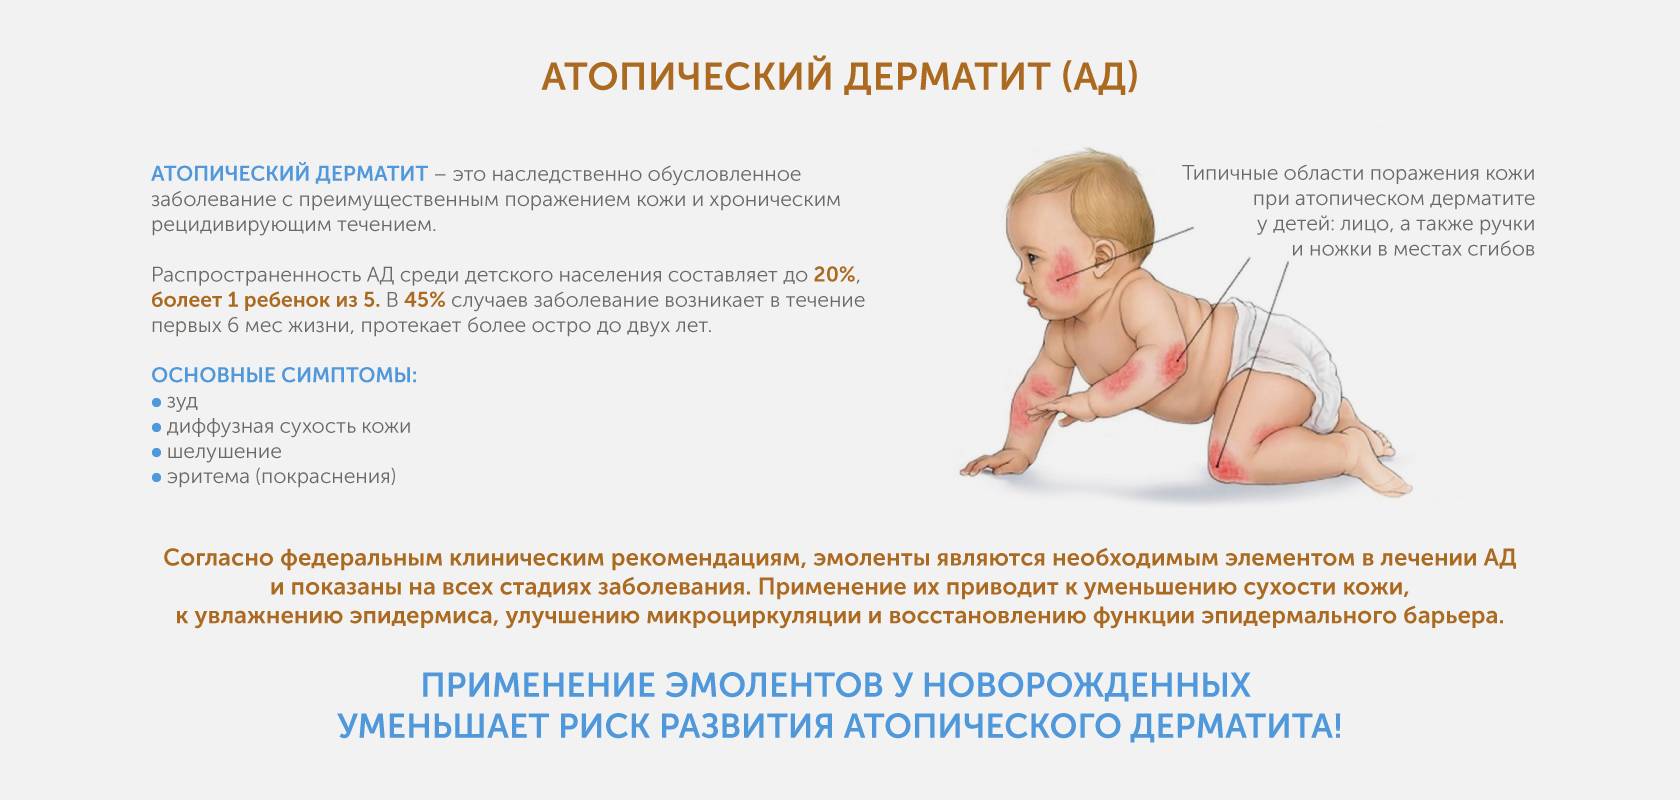 Использовать в течение 6 месяцев. Атопический дерматит клинические рекомендации 2020. Атопический дерматит причины у детей 4 месяца. Симптомы атопический дерматит у ребёнка 6 месяцев. Дерматит у 4 месячного ребенка.